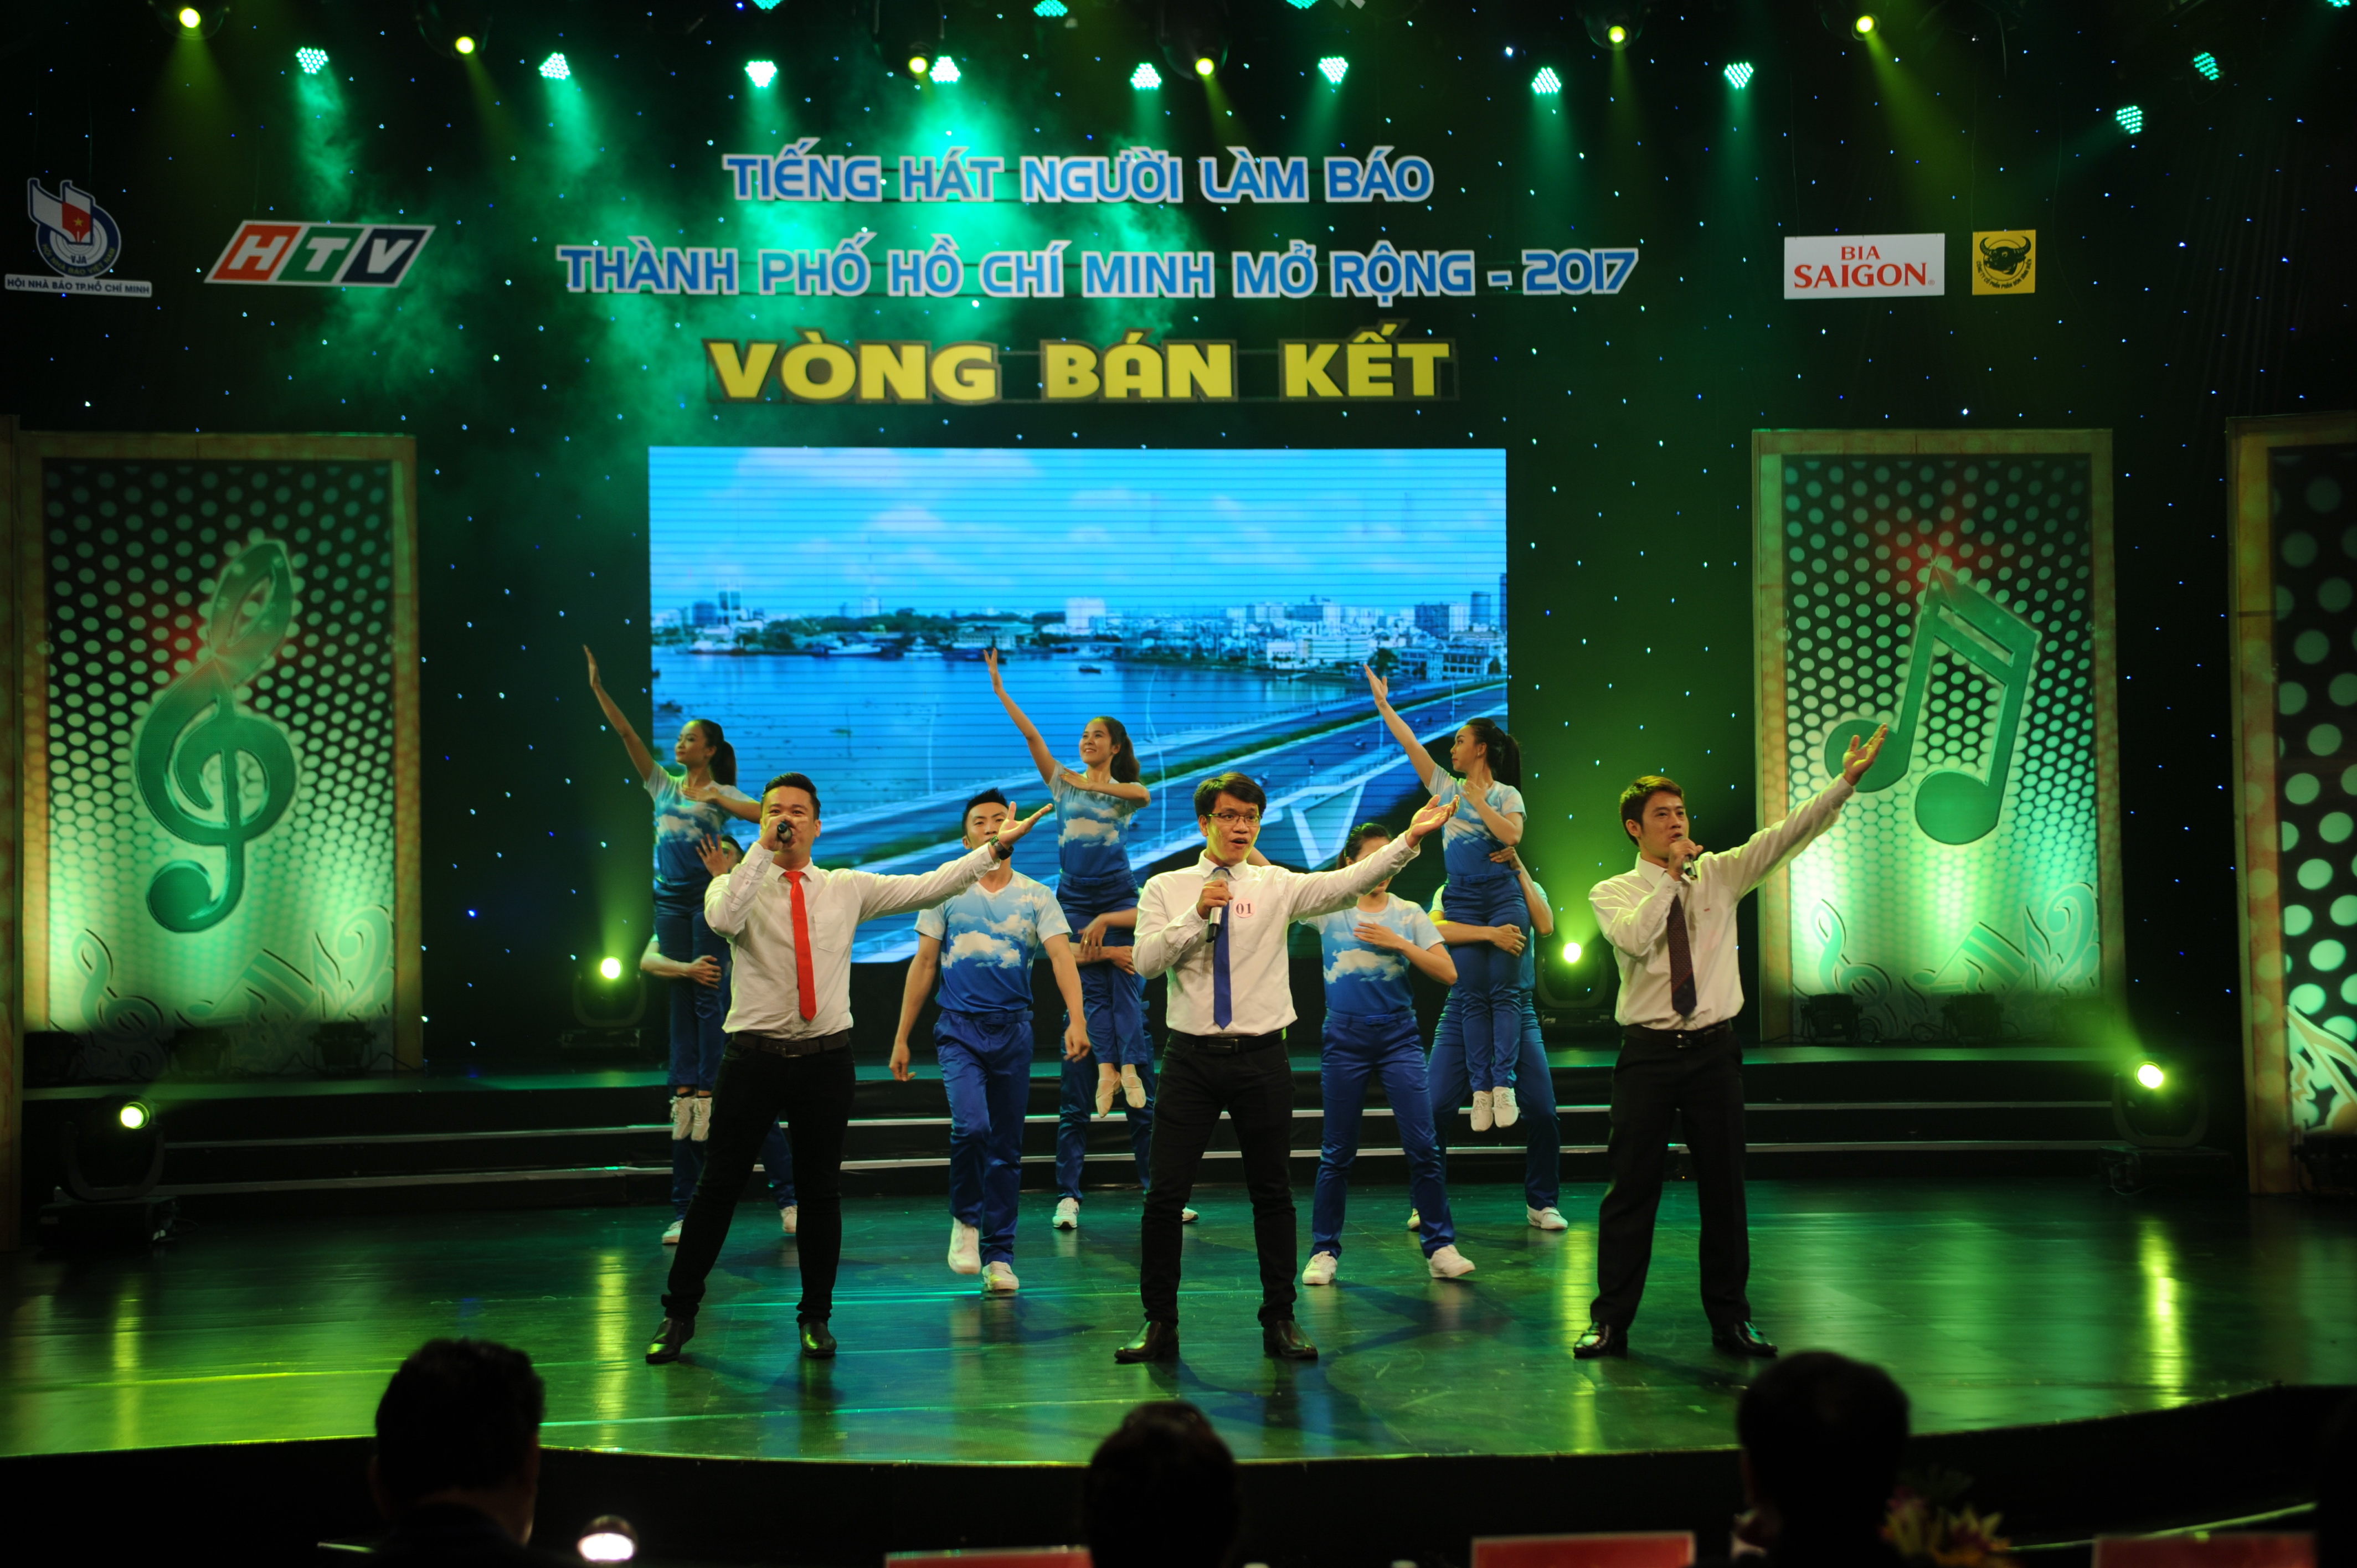 Tiếng hát Người Làm Báo TP Hồ Chí Minh mở rộng 2017: 6 tiết mục vào vòng chung kết trao giải - Hình 3